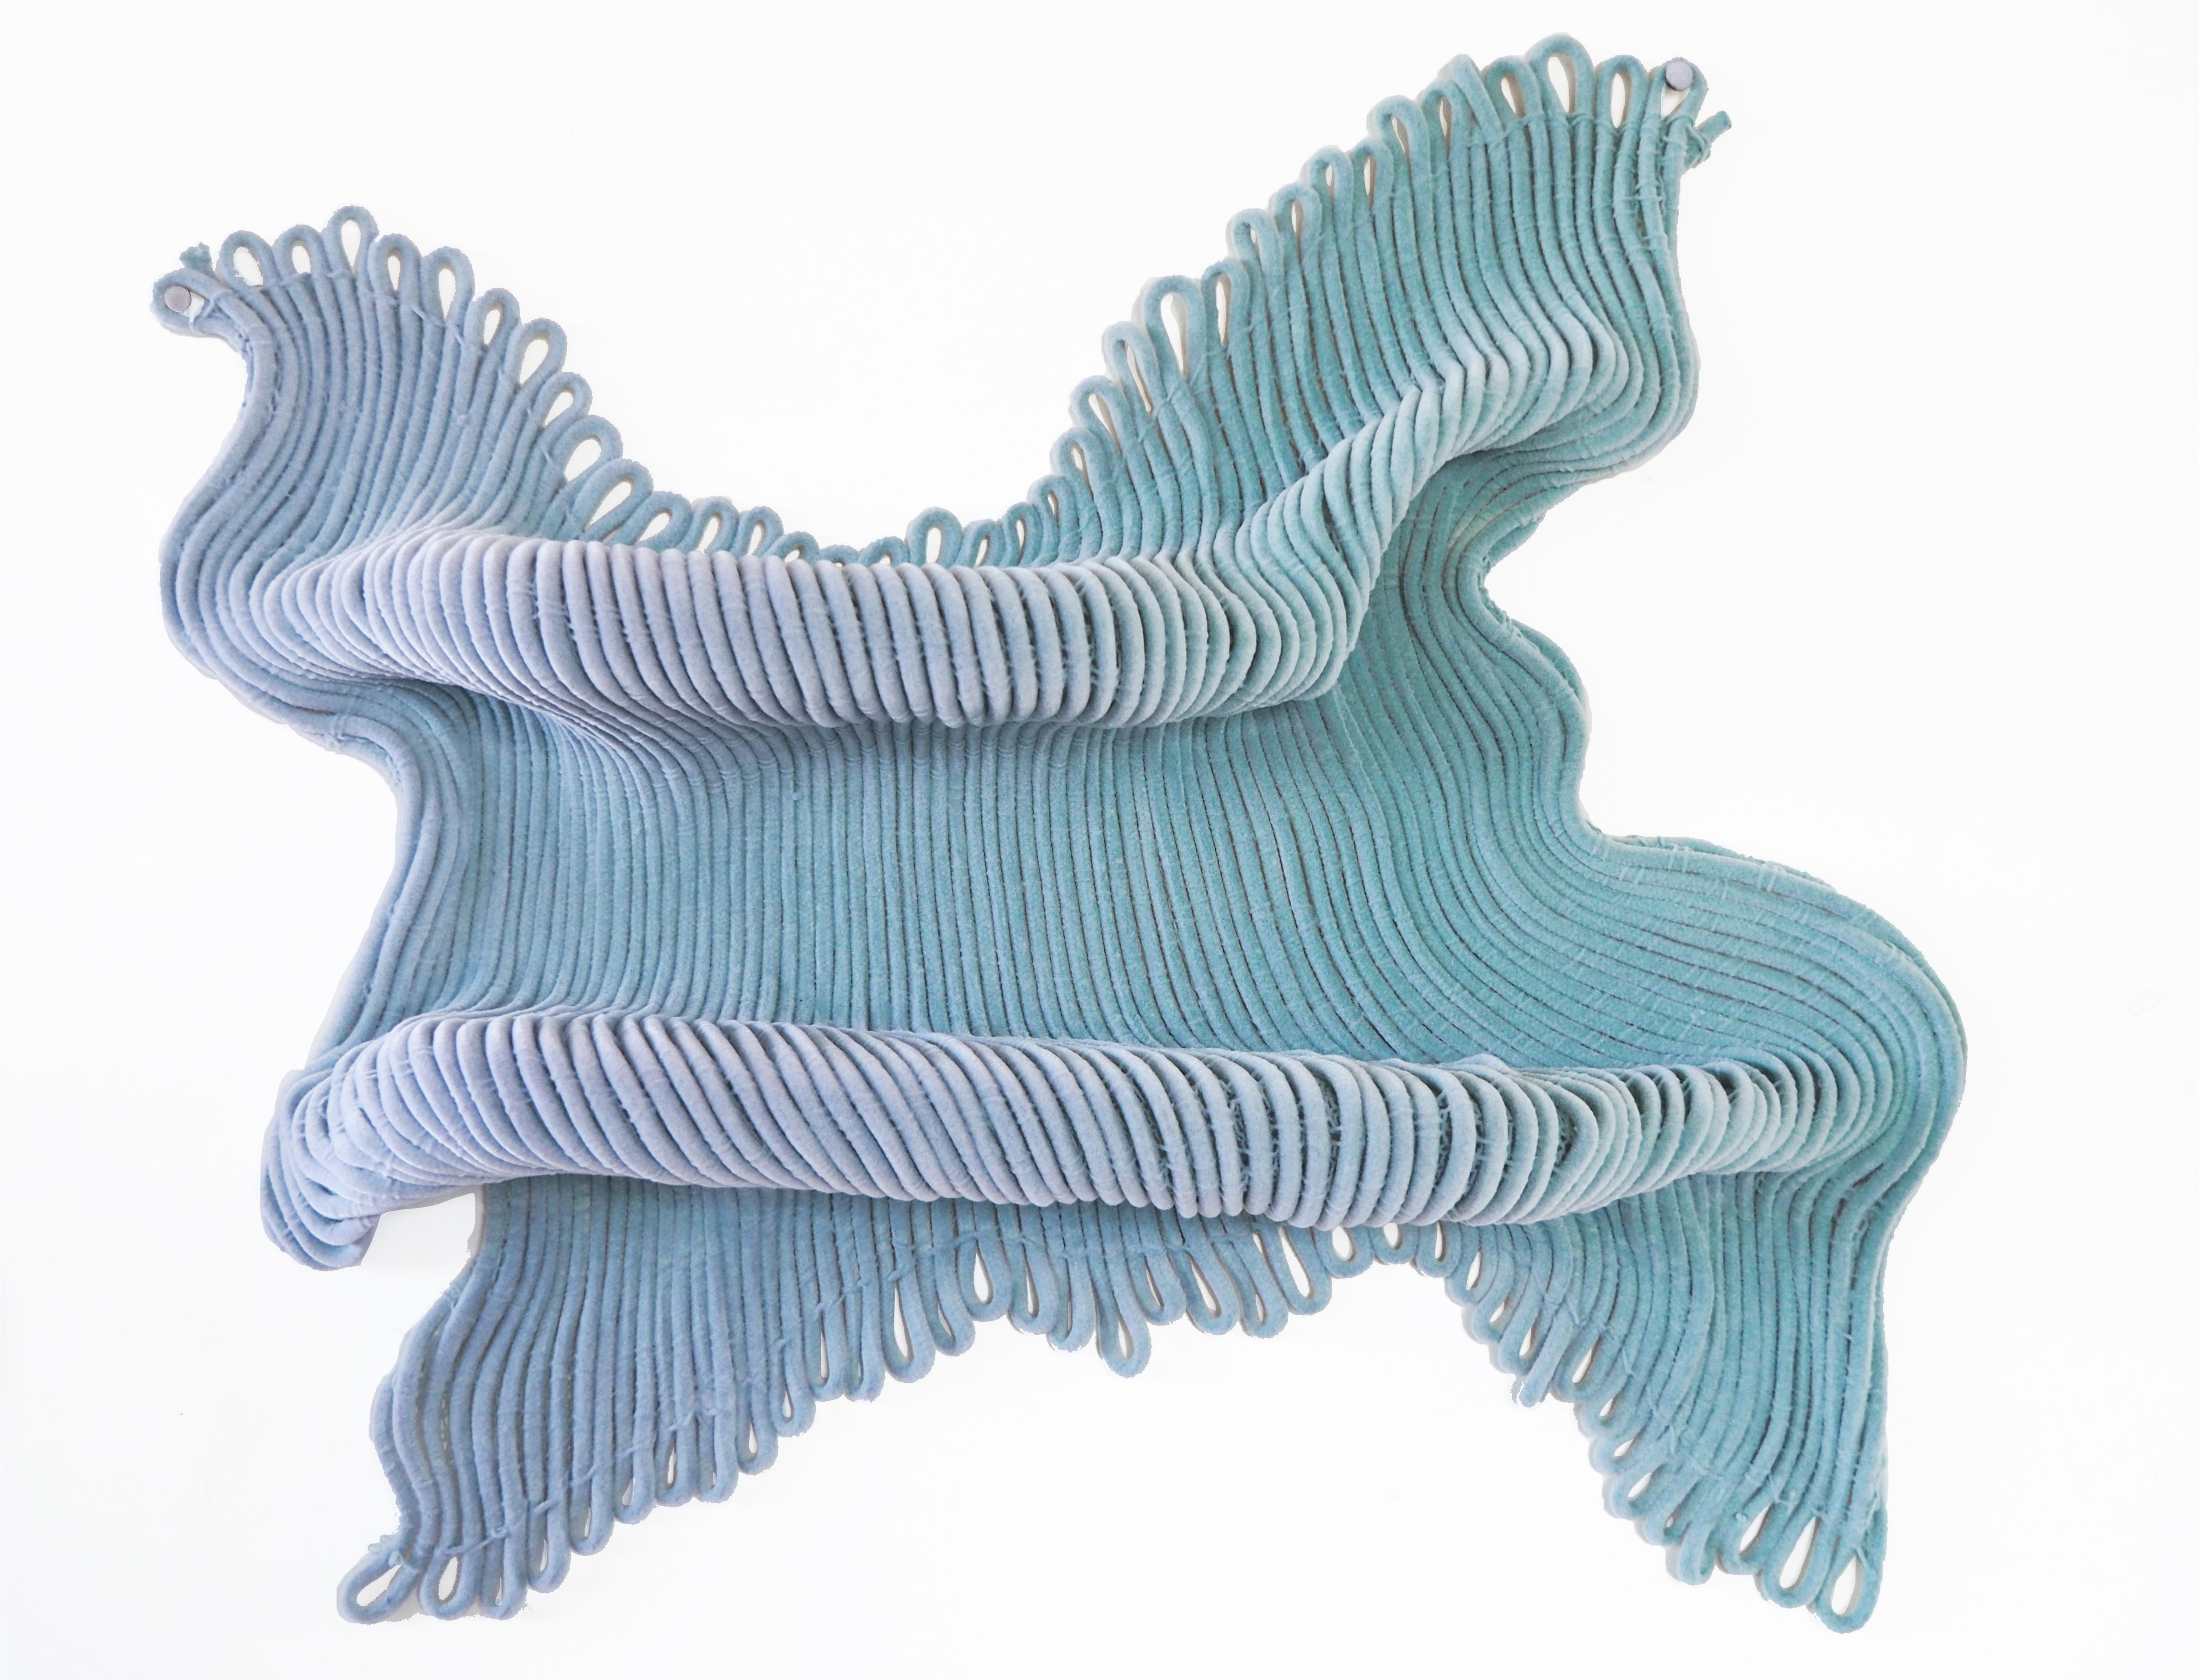 Gewirktes und gewebtes Textil aus einer Kombination von hochwertigem Polypropylenseil und Fallschirmseilen, die mit Epoxidharz zu einer starken Verbundstruktur geformt werden. Mit einer Beschichtung aus Nylonfasern versehen.

Die Reef-Serie